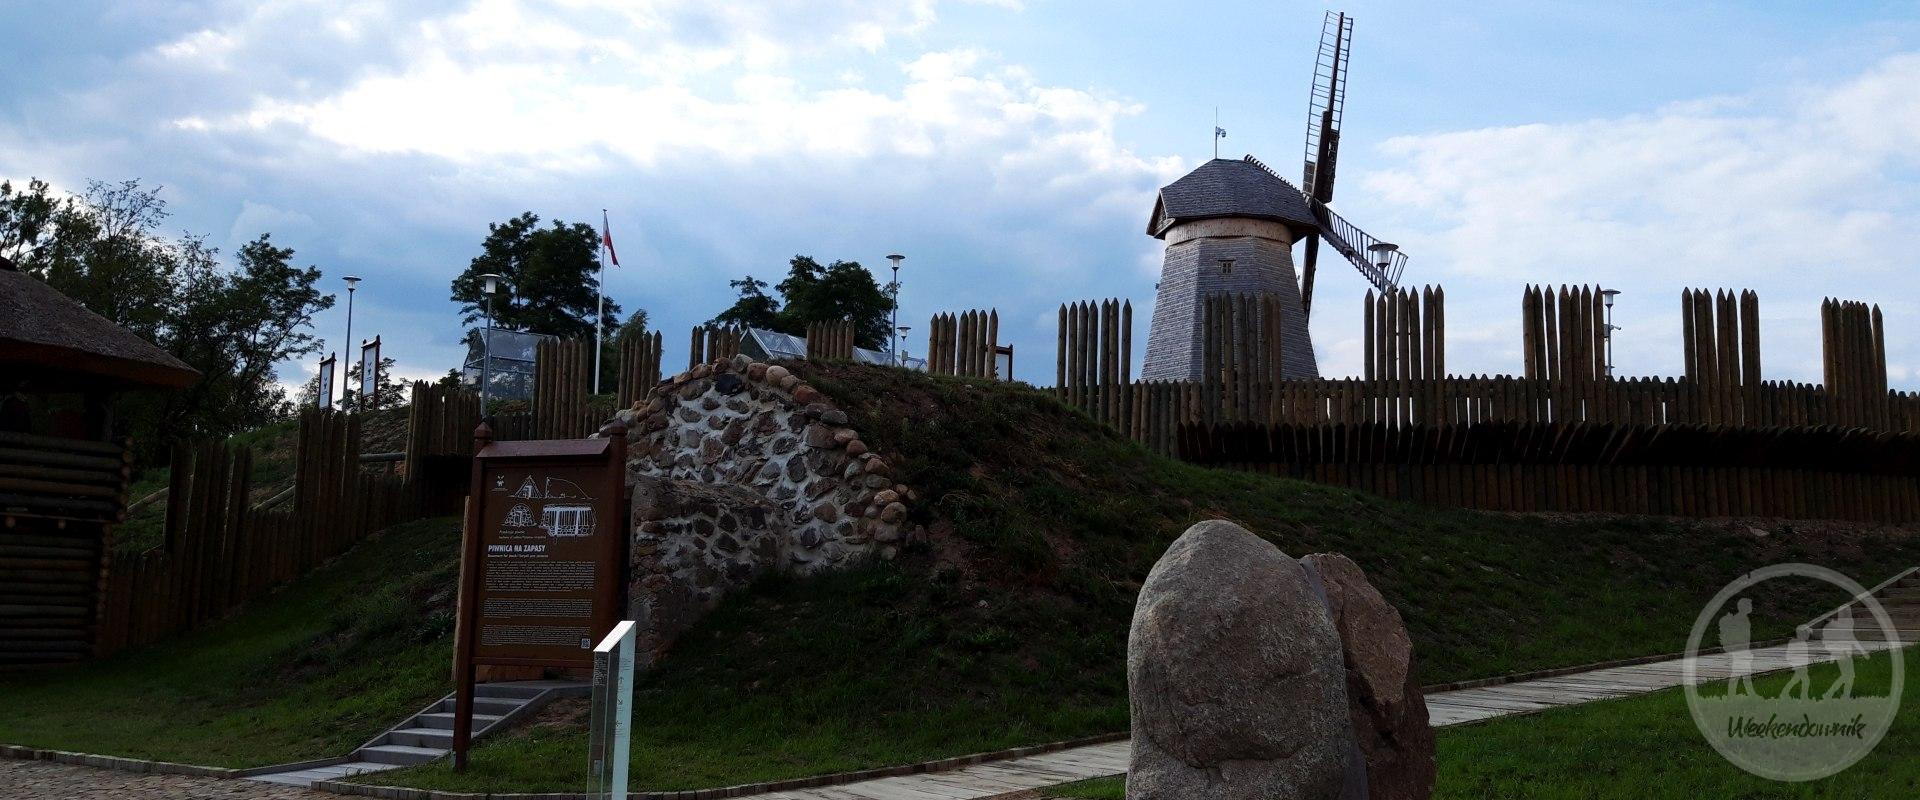 Park kulturowy Korycin - Milewszczyzna